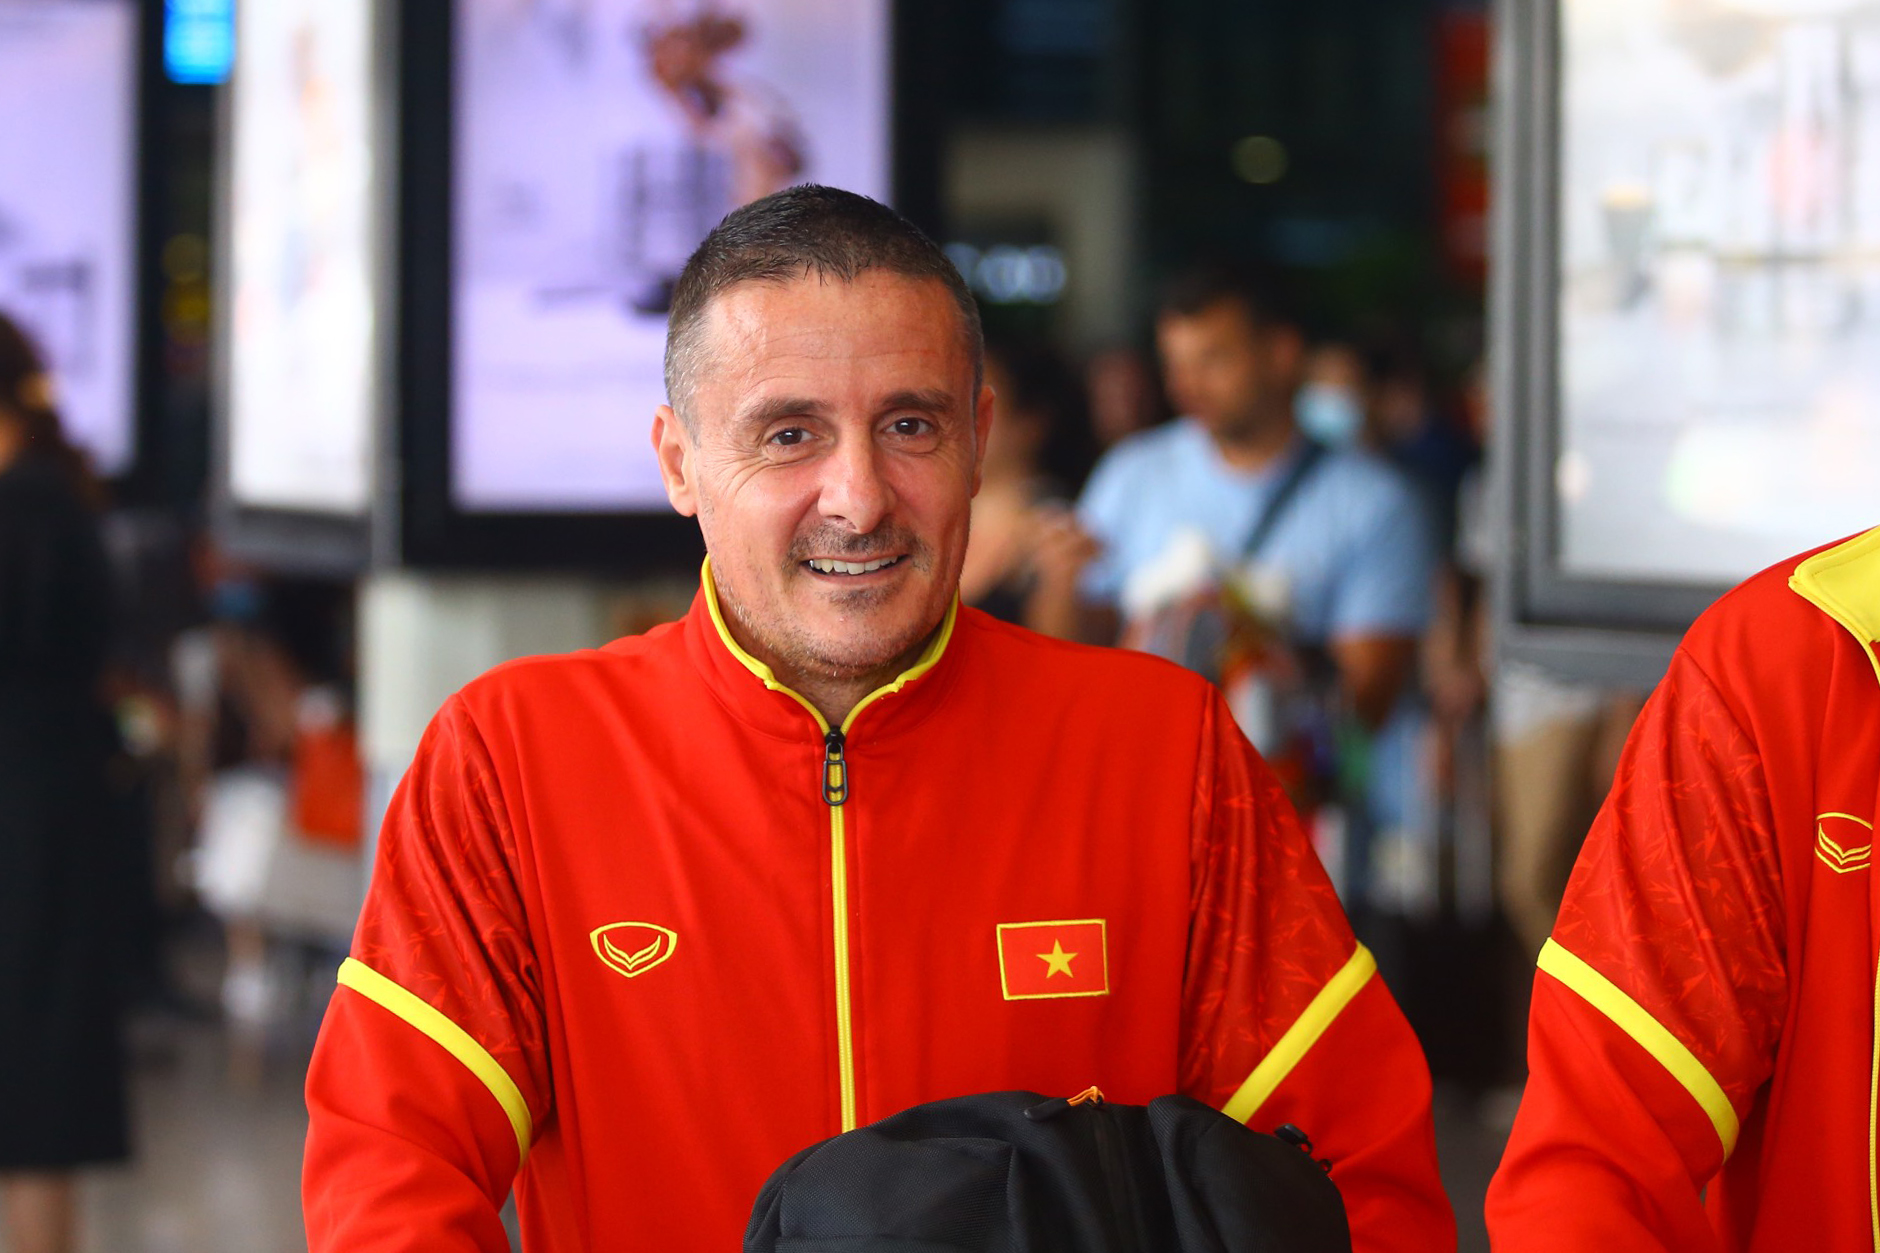 Sau đó, huấn luyện viên trưởng Philippe Troussier cùng các thành viên ban huấn luyện cũng đáp chuyến bay VN213 xuống sân bay Tân Sơn Nhất.